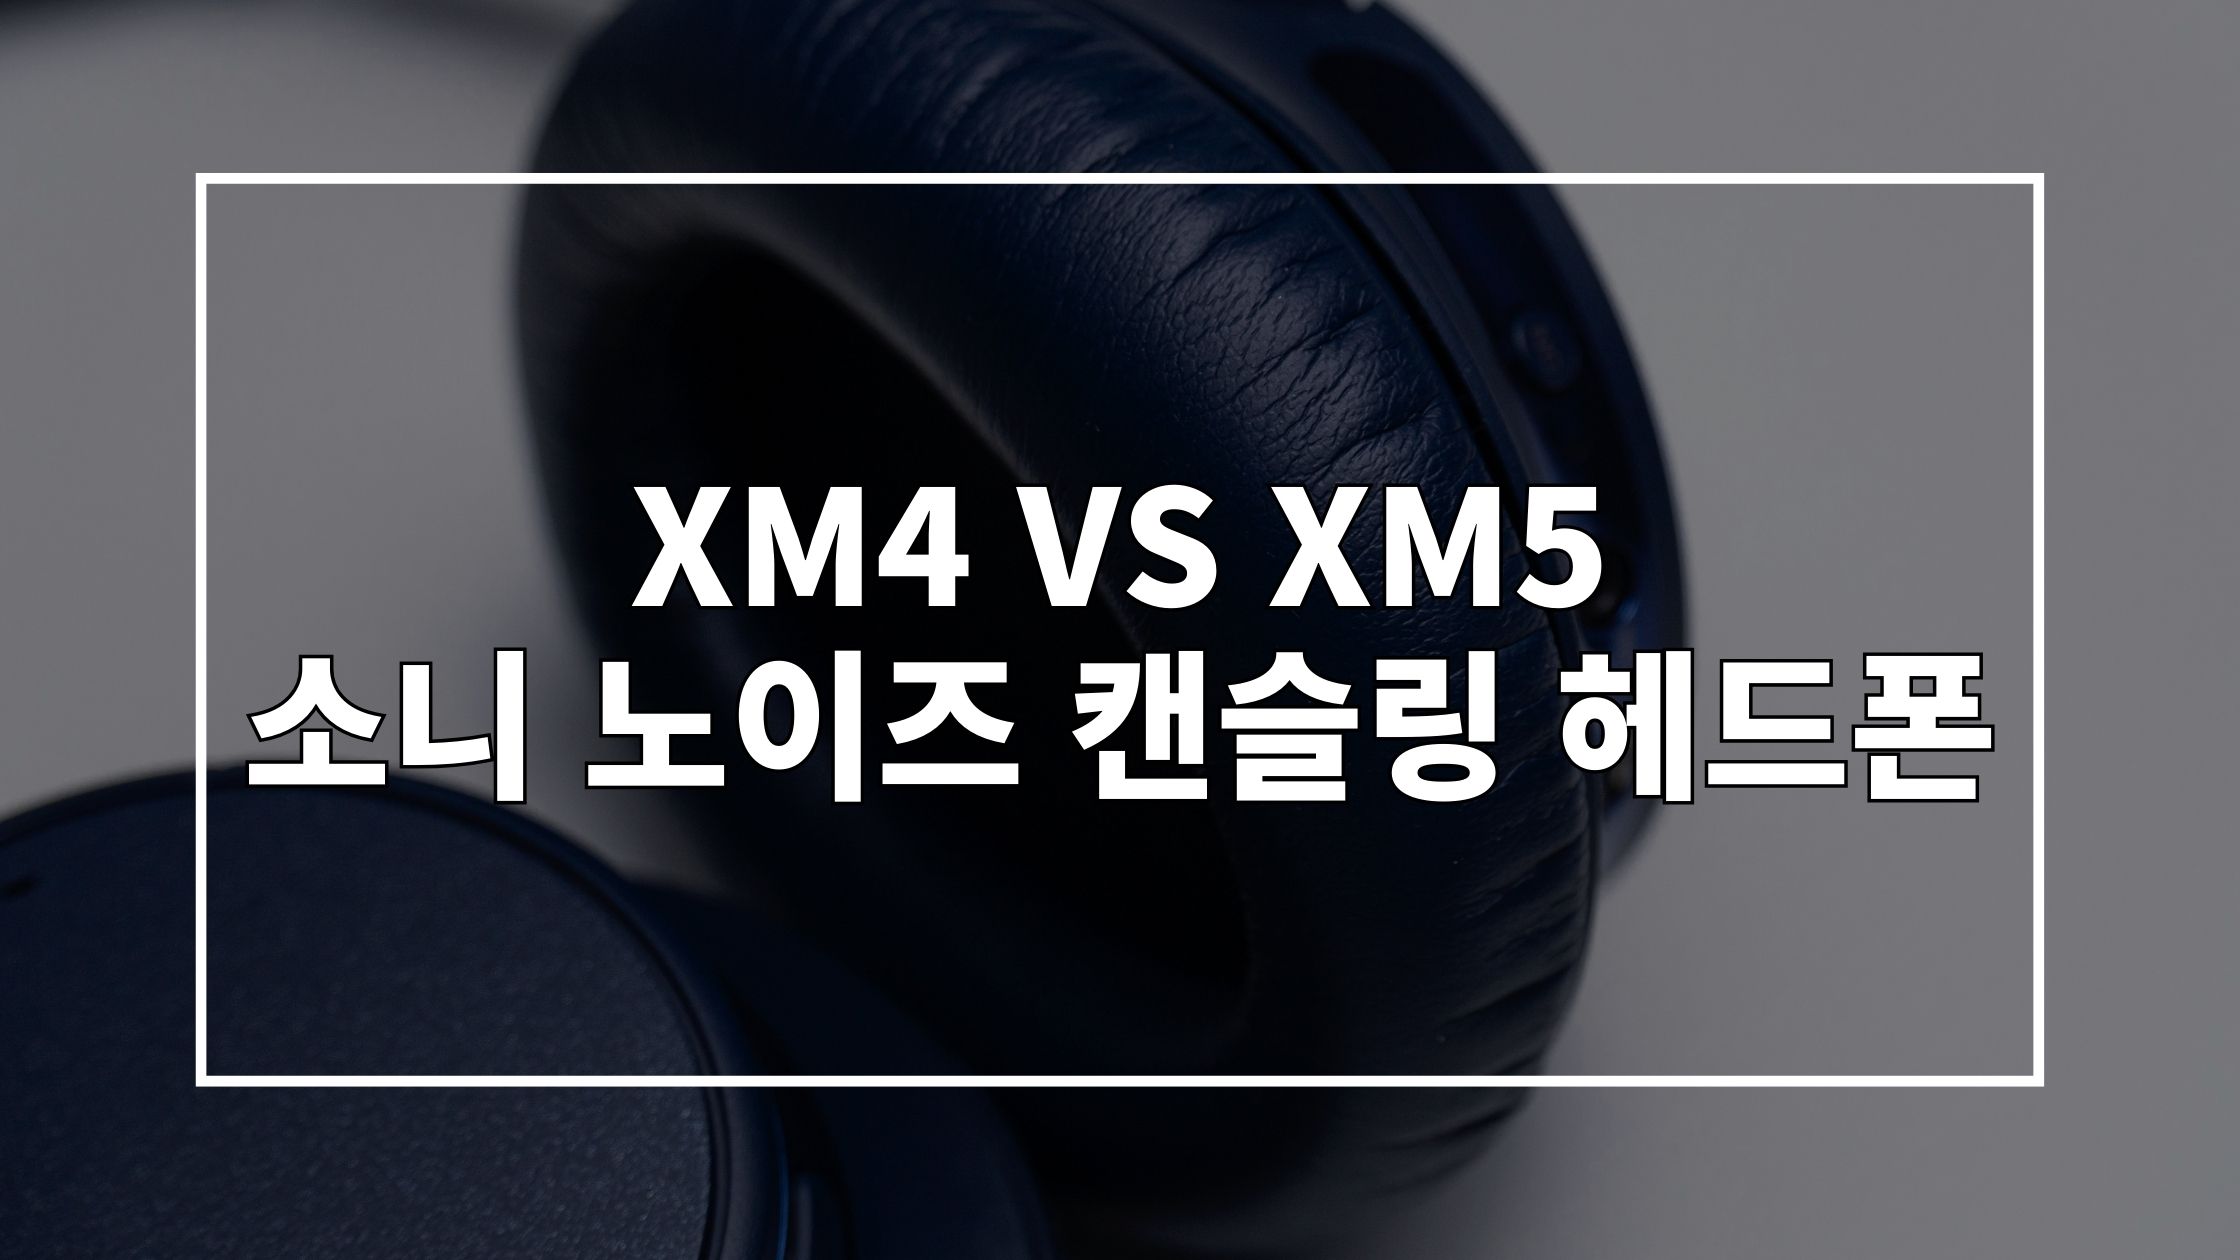 헤드폰 사진 위에 'XM4 VS XM5 소니 노이즈 캔슬링 헤드폰'이라고 쓰여있는 썸네일 이미지입니다.